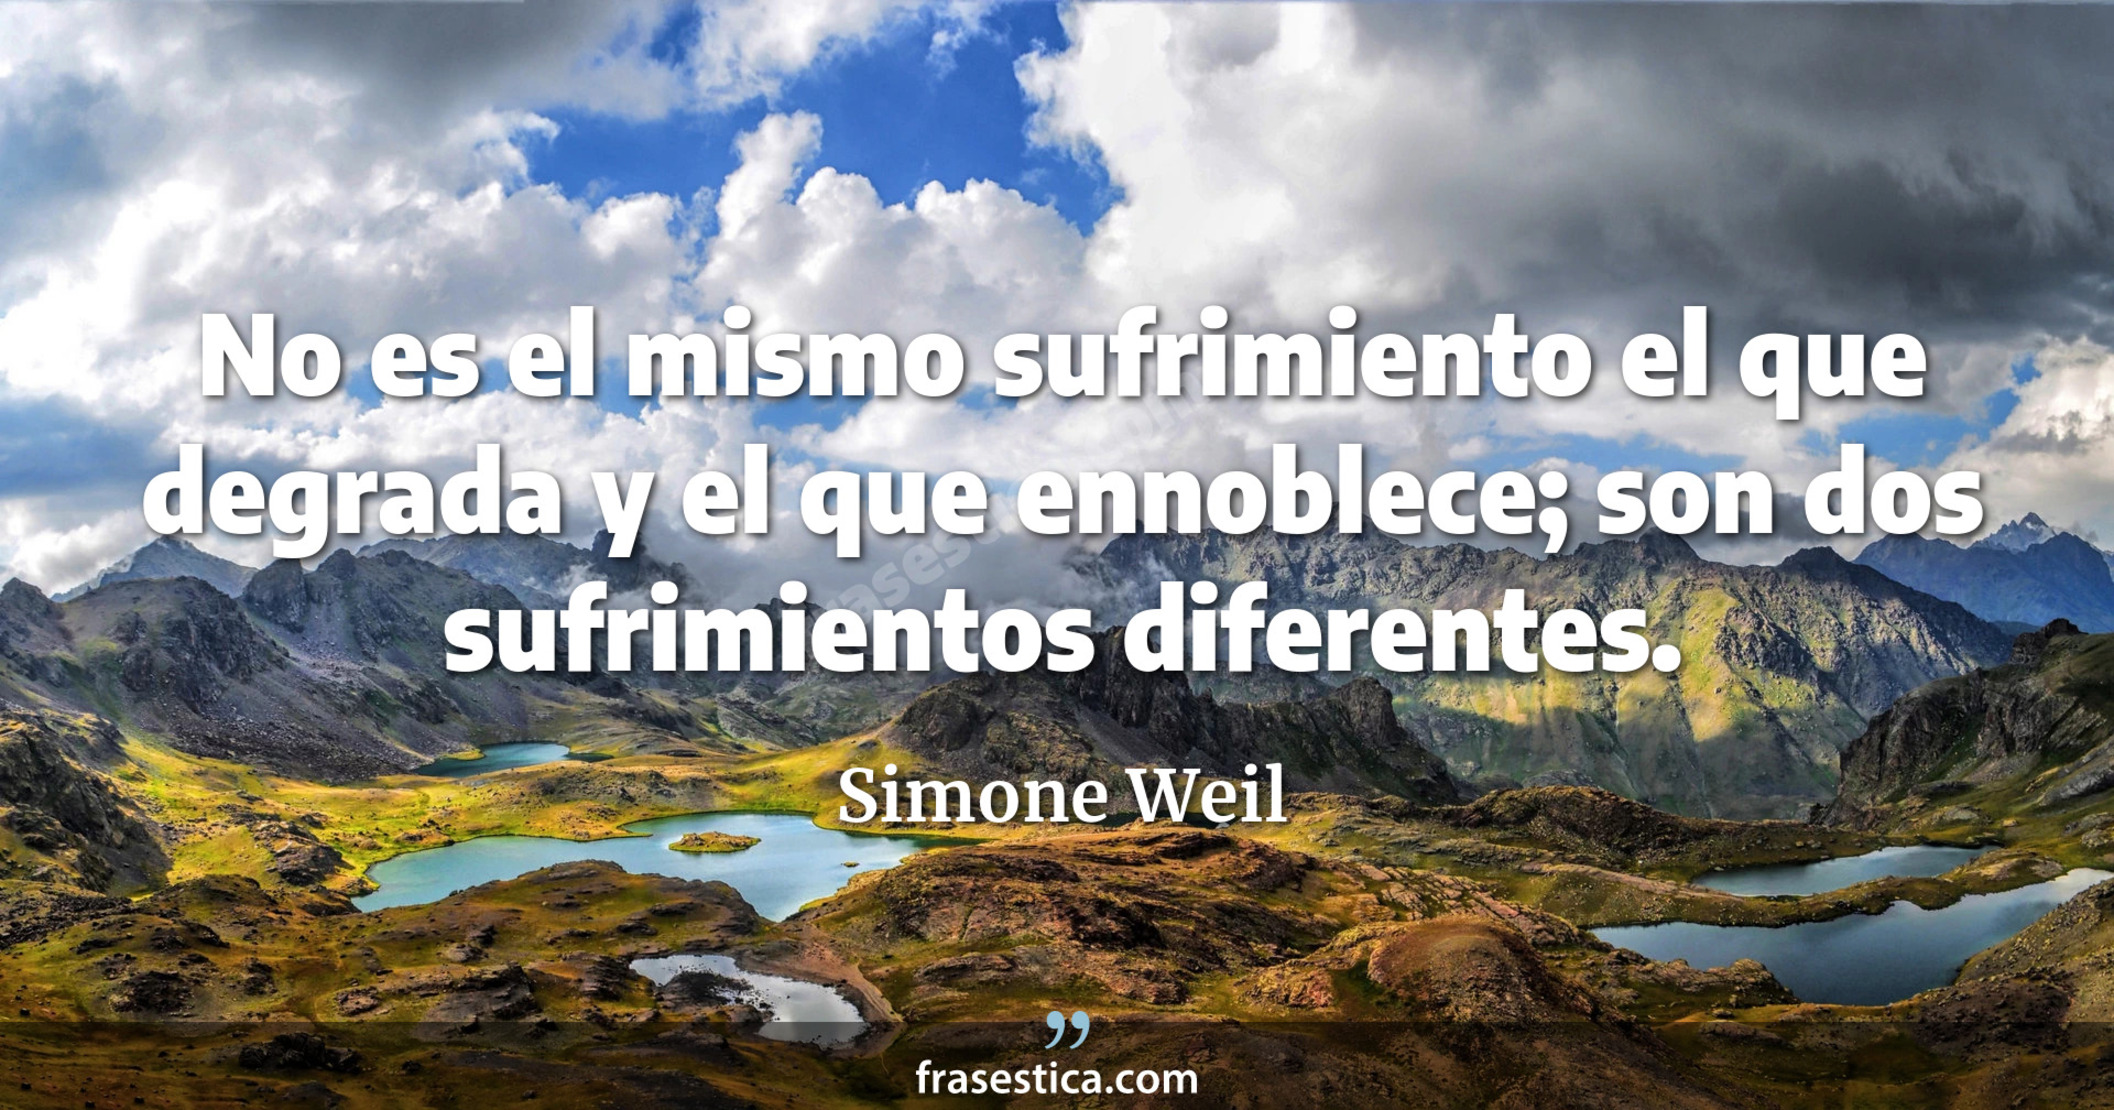 No es el mismo sufrimiento el que degrada y el que ennoblece; son dos sufrimientos diferentes. - Simone Weil